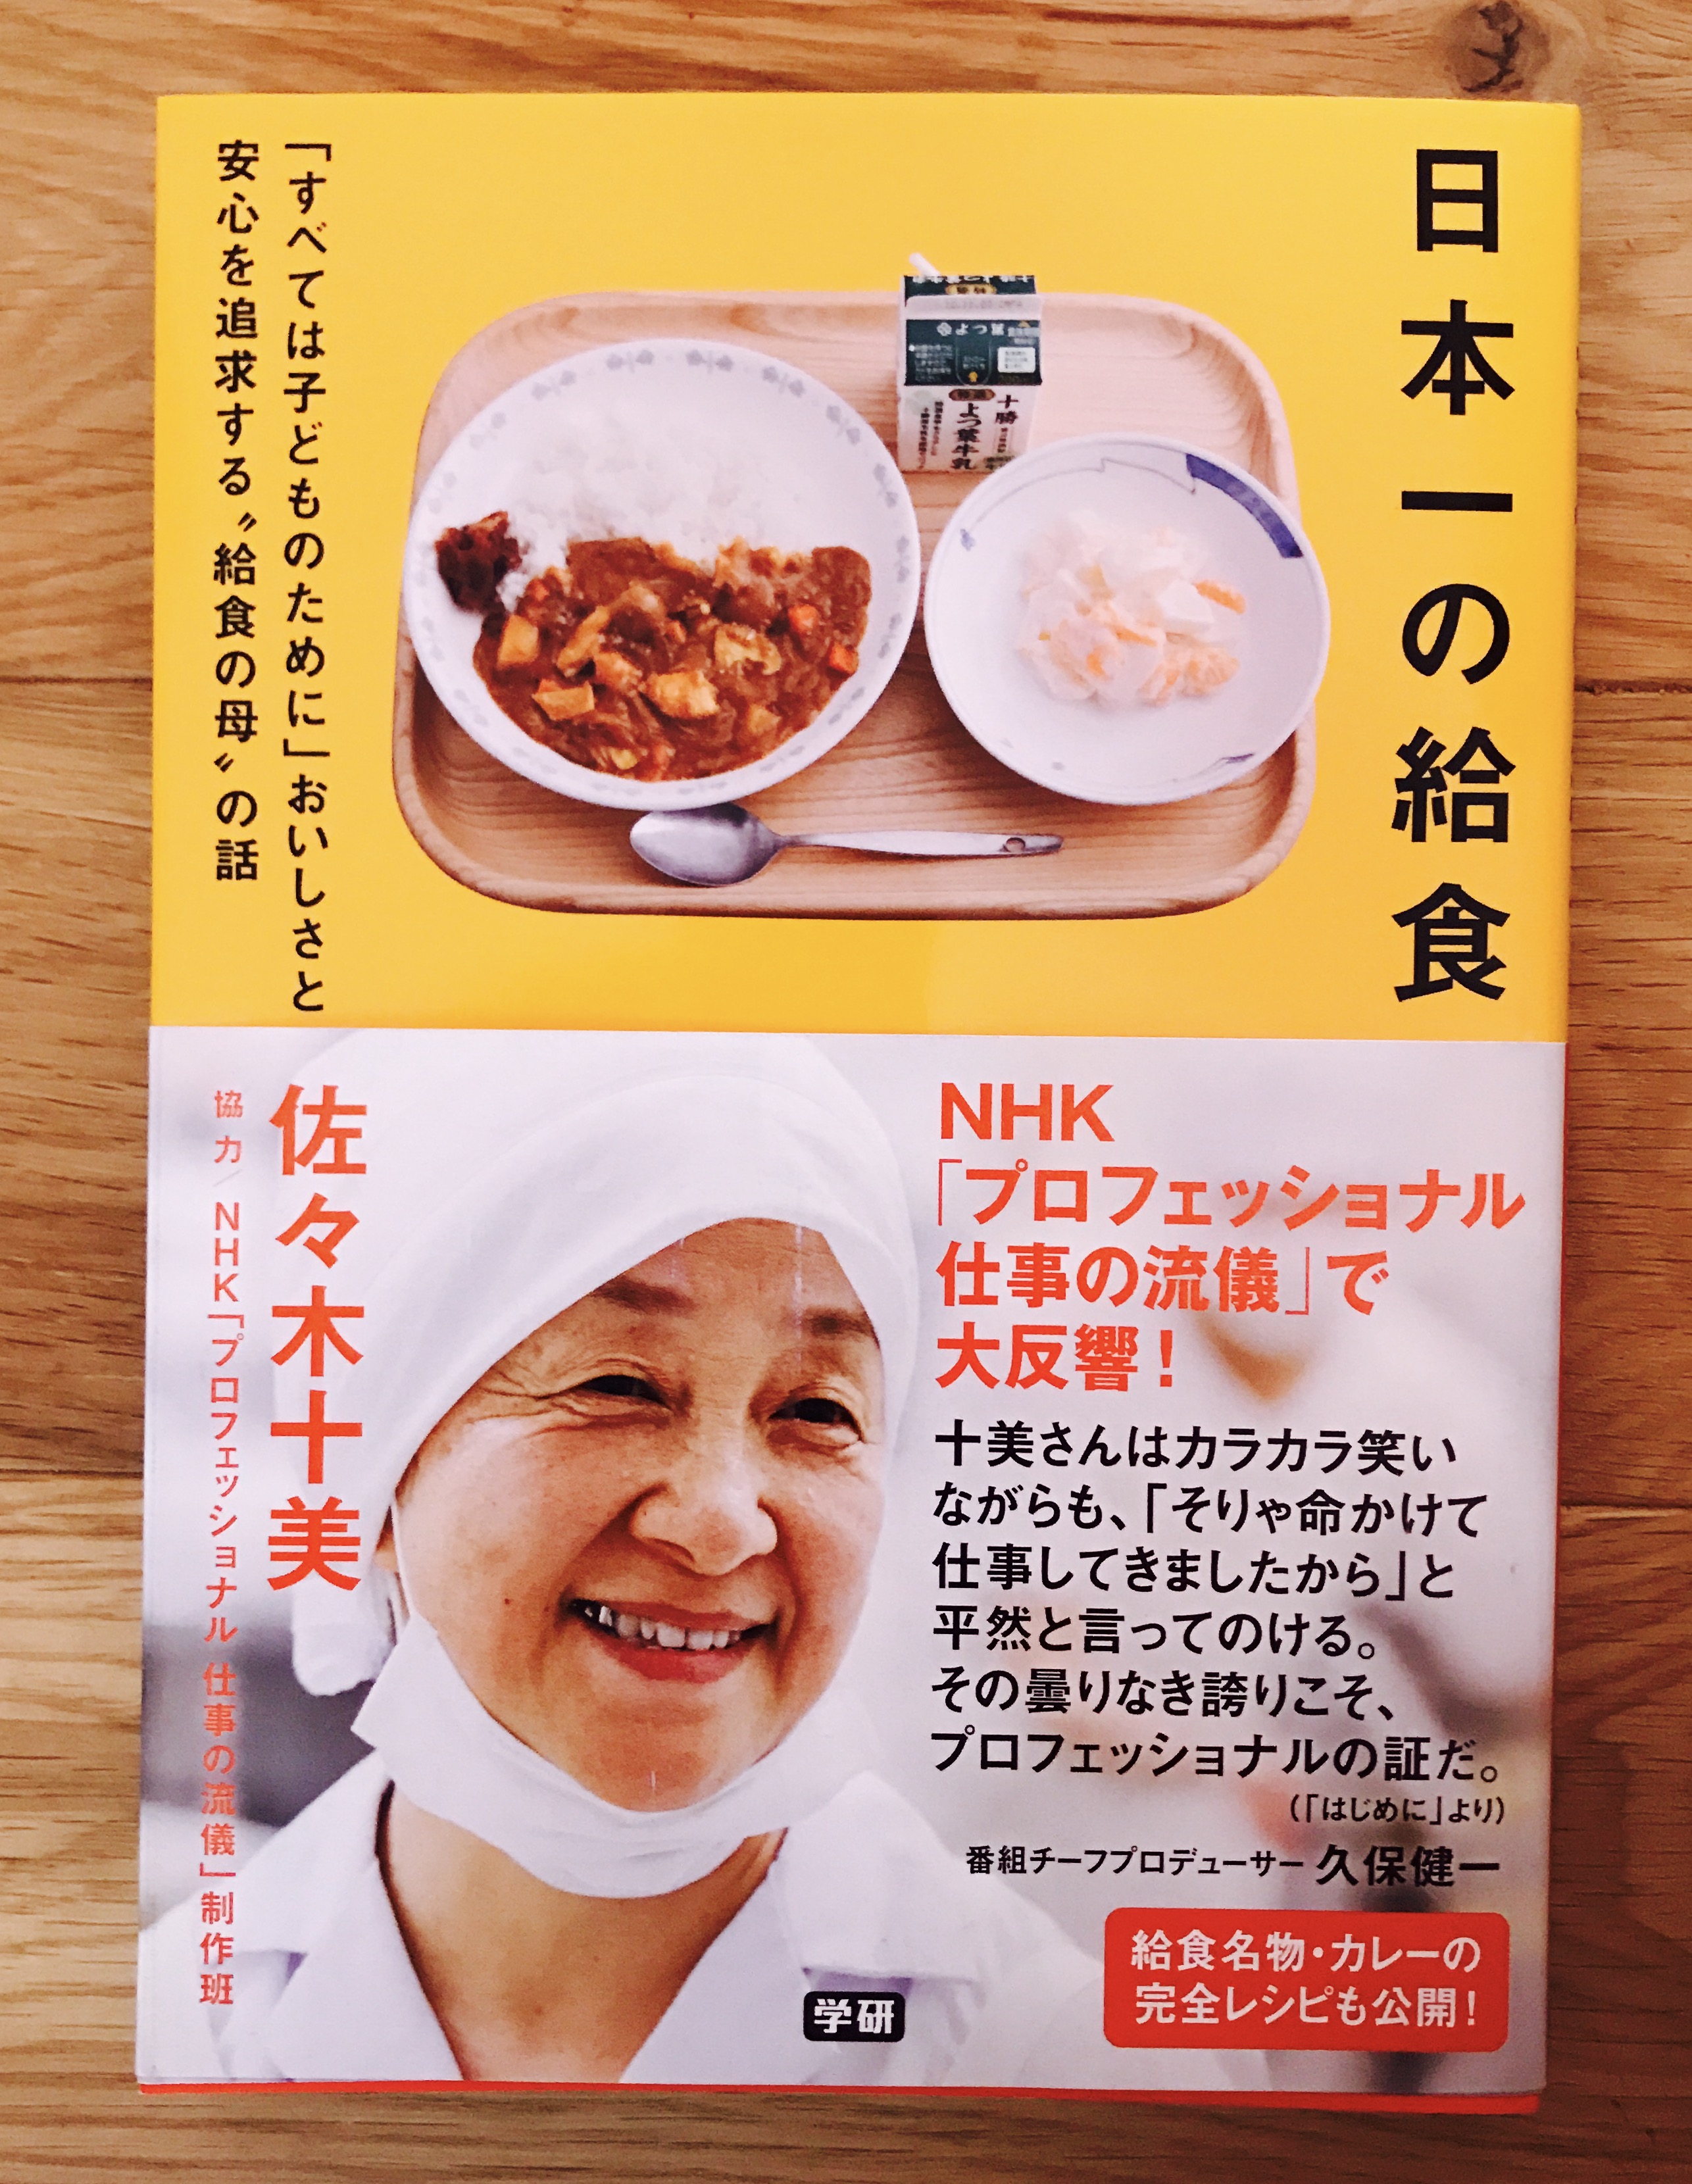 書籍 日本一の給食 著 佐々木十美先生 カレーブレンドスパイス 女農業道 オンラインショップ